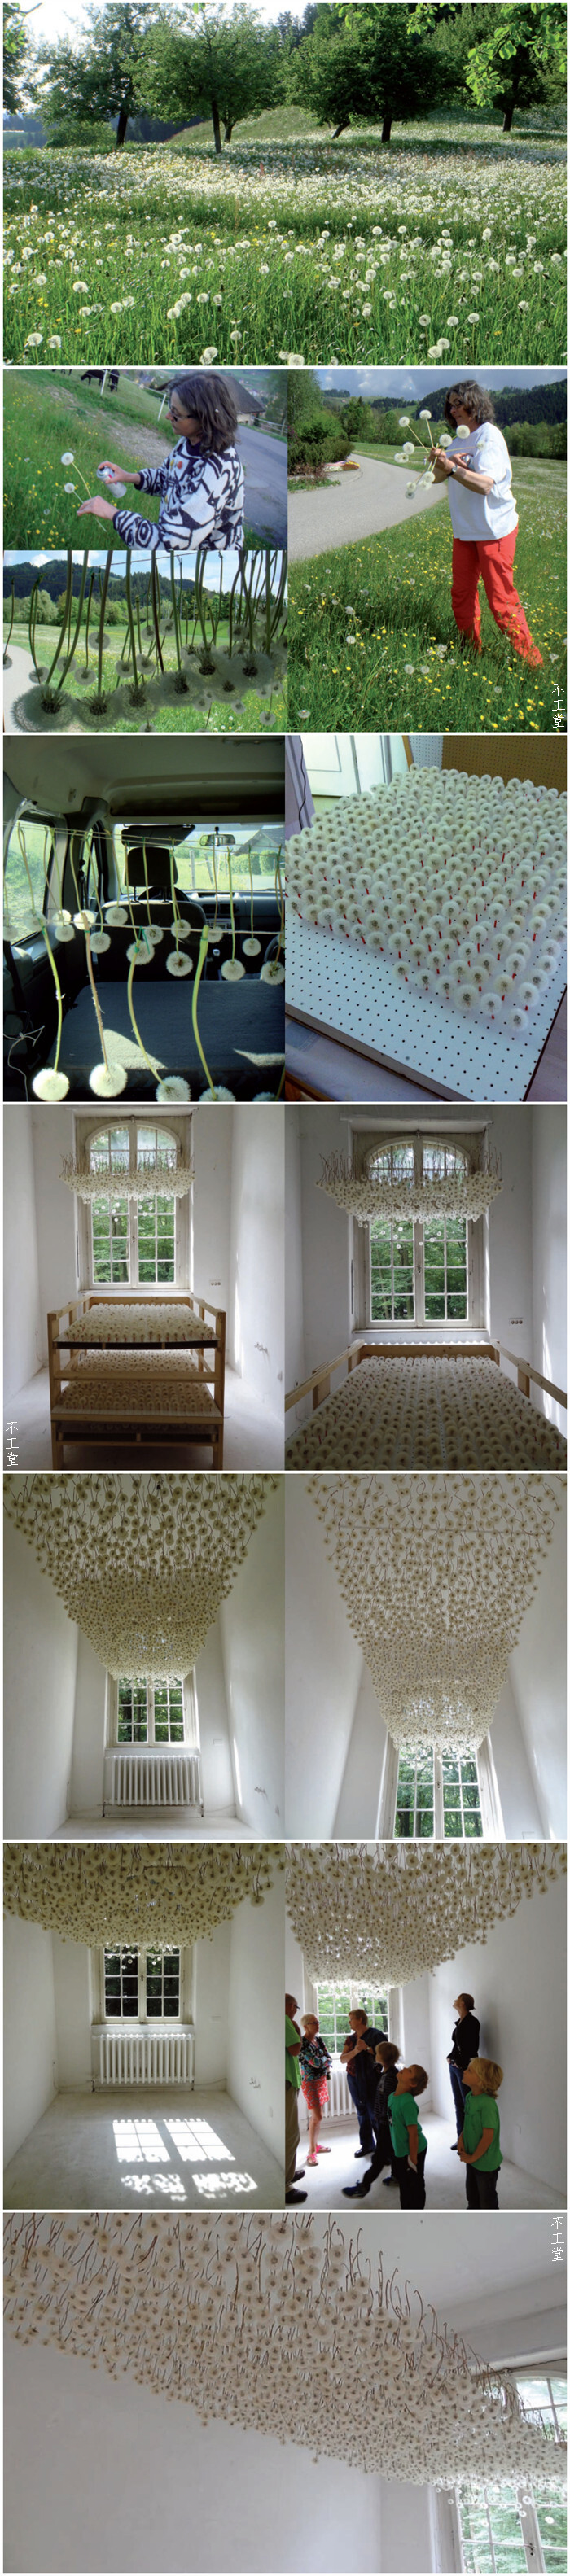 德国艺术家Regine Ramseier采摘了2000朵蒲公英制作的装置艺术作品